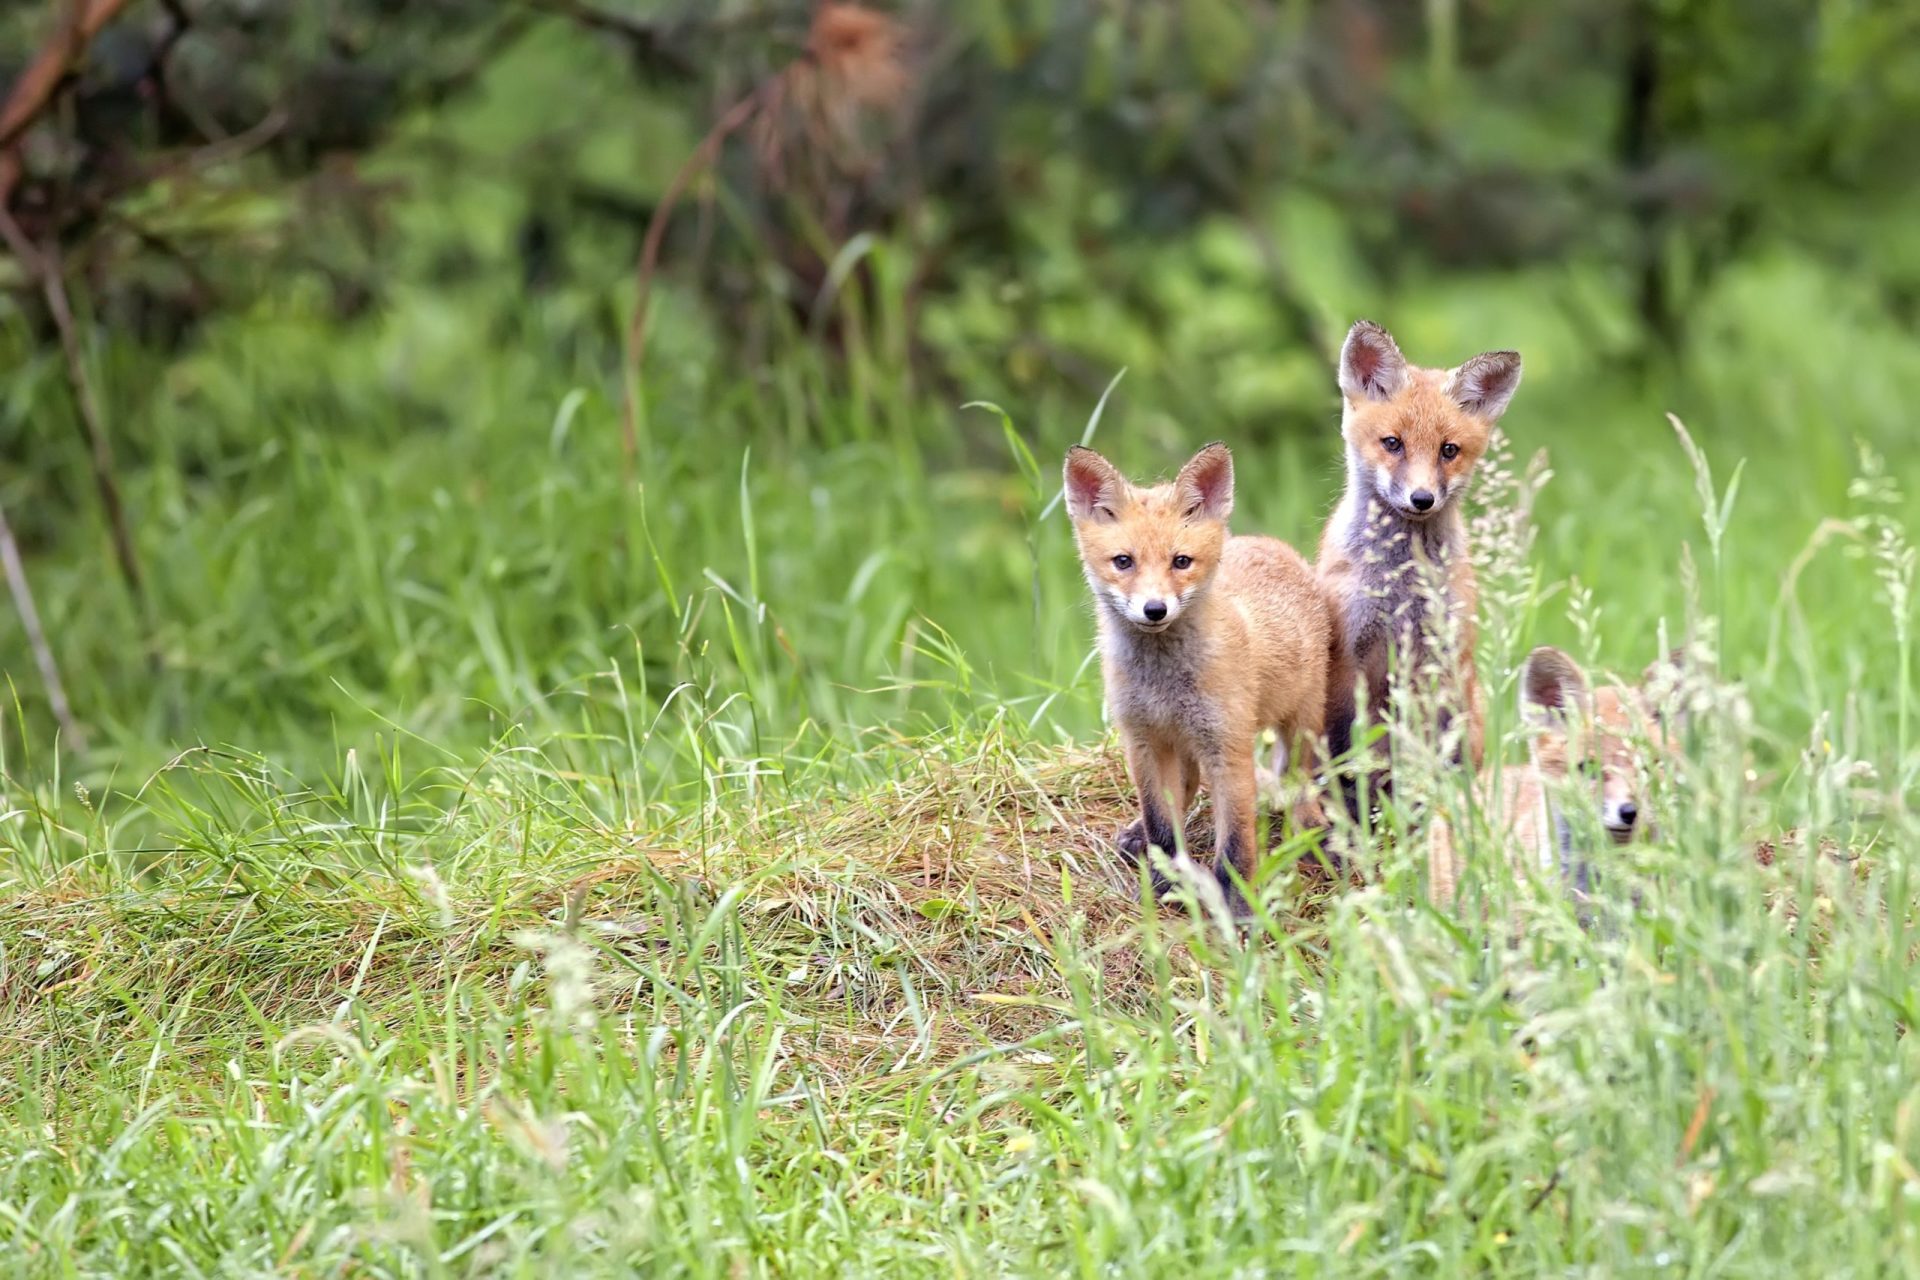 Associação acusa PAN de “total ignorância” acerca das justificações apresentadas sobre a caça à raposa